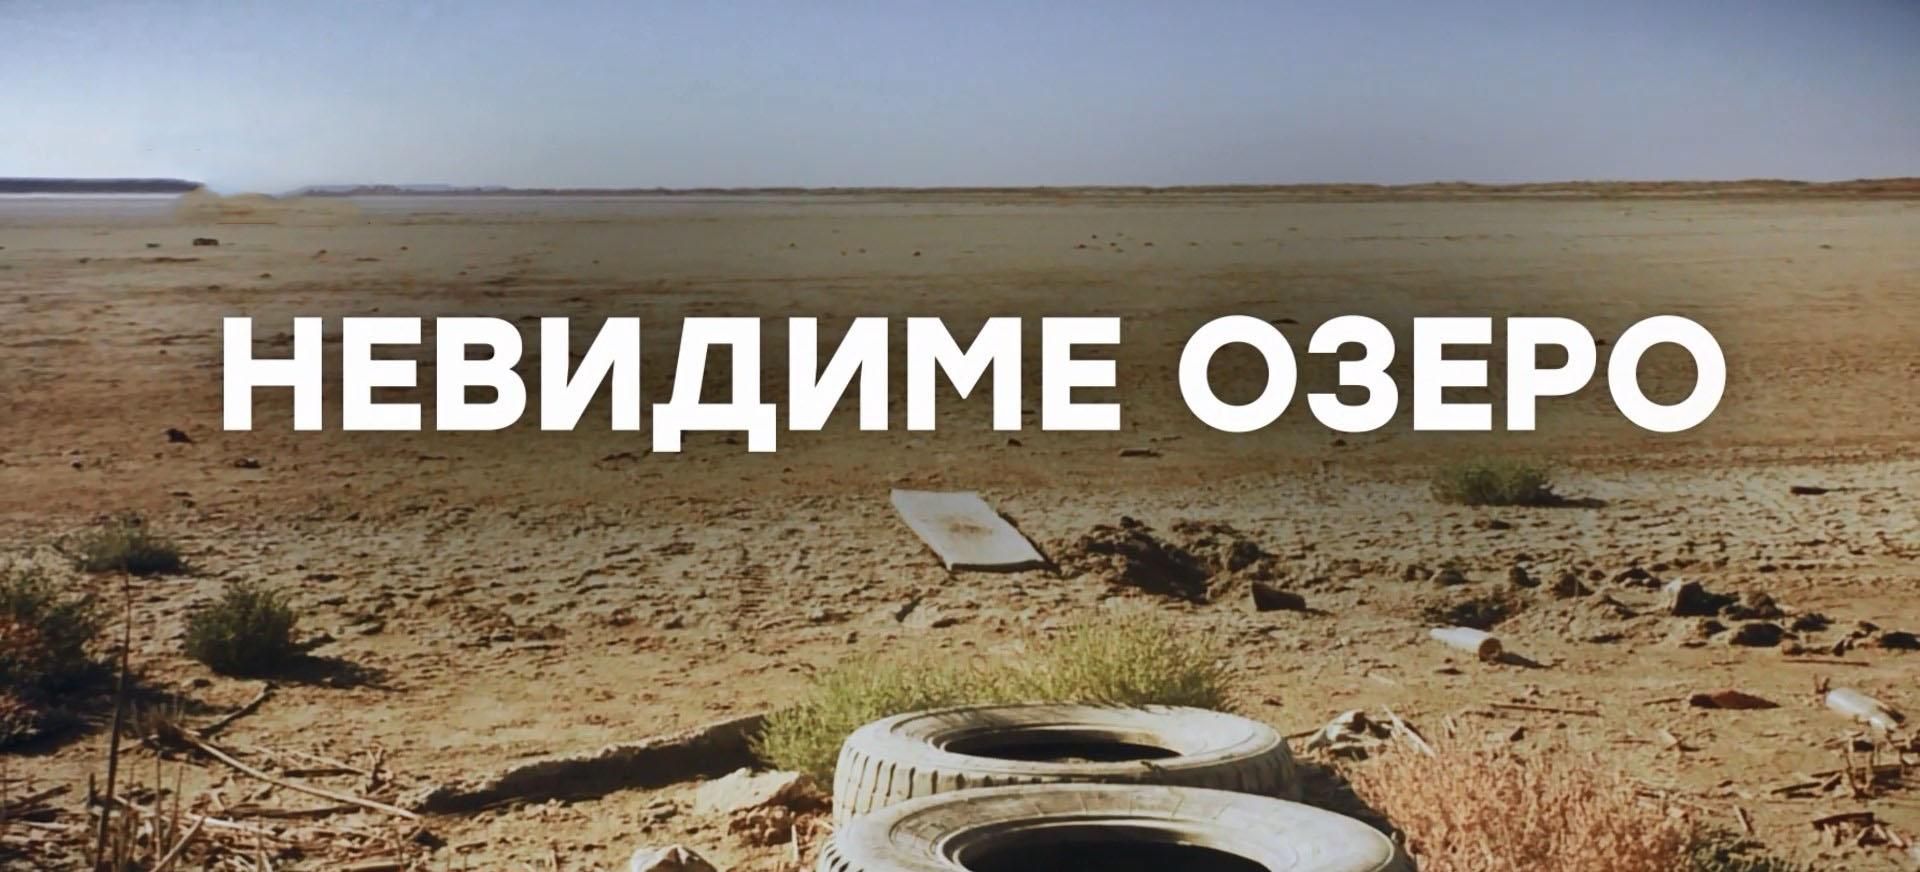 Крым на грани экологической катастрофы: на полуострове исчезло еще одно озеро